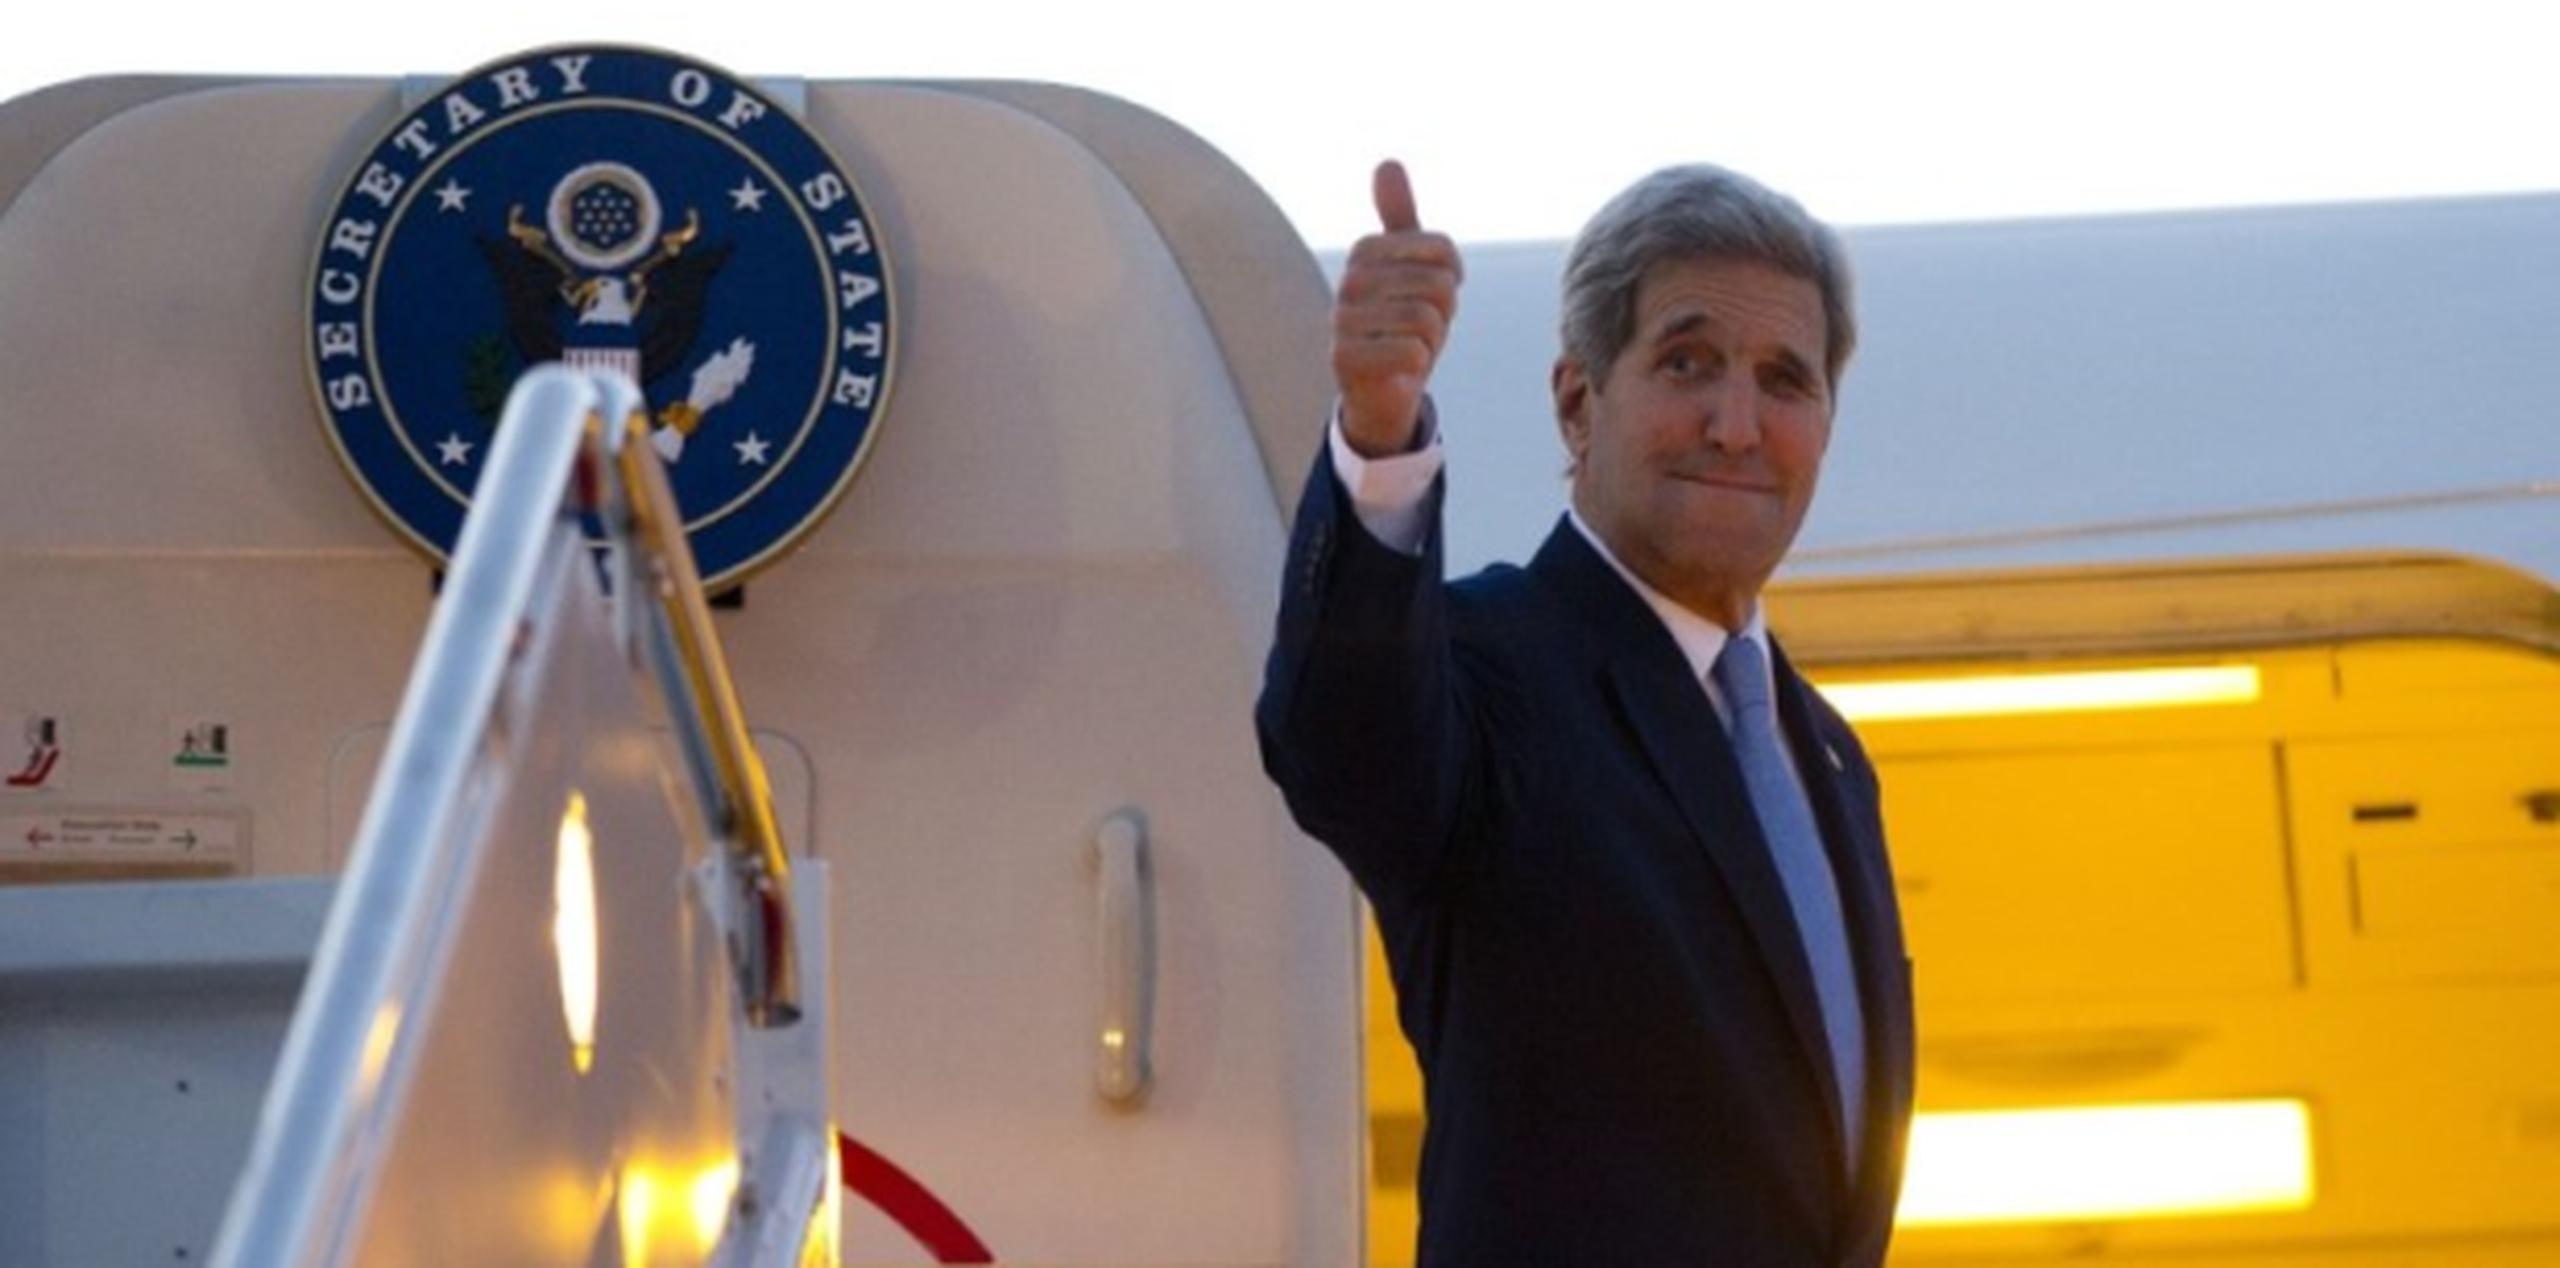 Kerry llegó a las 9:00 a.m. a bordo de un avión del Departamento de Estado de EE.UU. en el que se leía en uno de los costados "United States of America". (AFP)